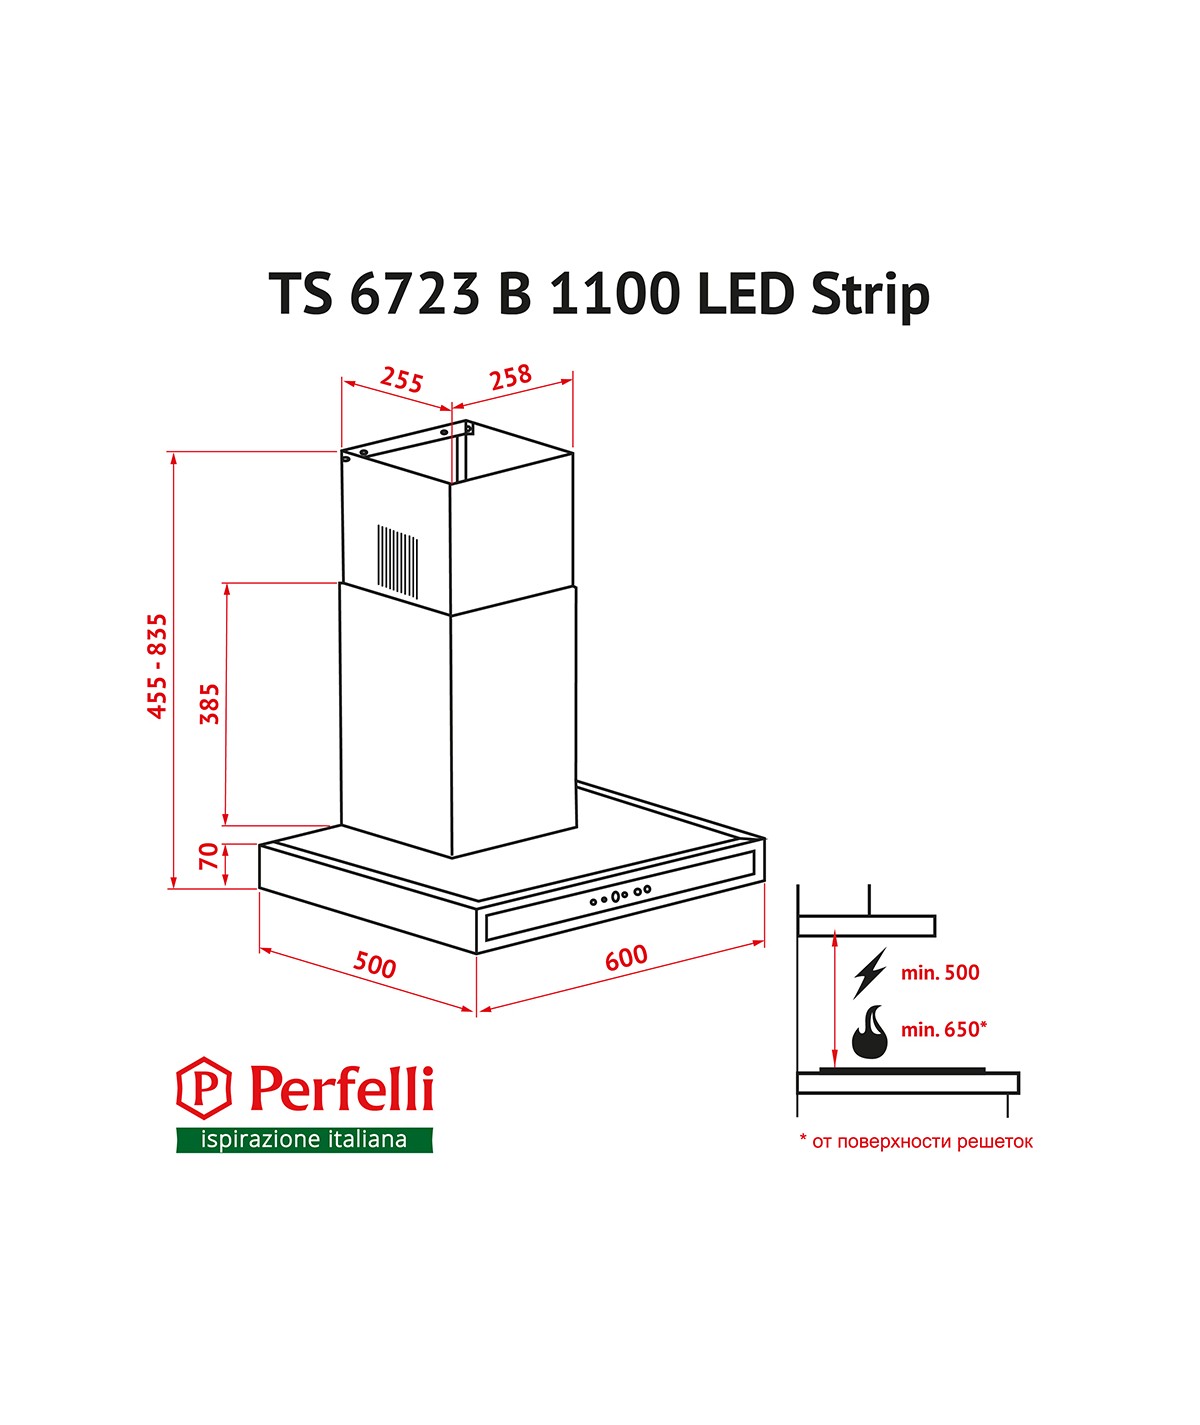 Perfelli TS 6723 B 1100 WH LED Strip Габаритные размеры